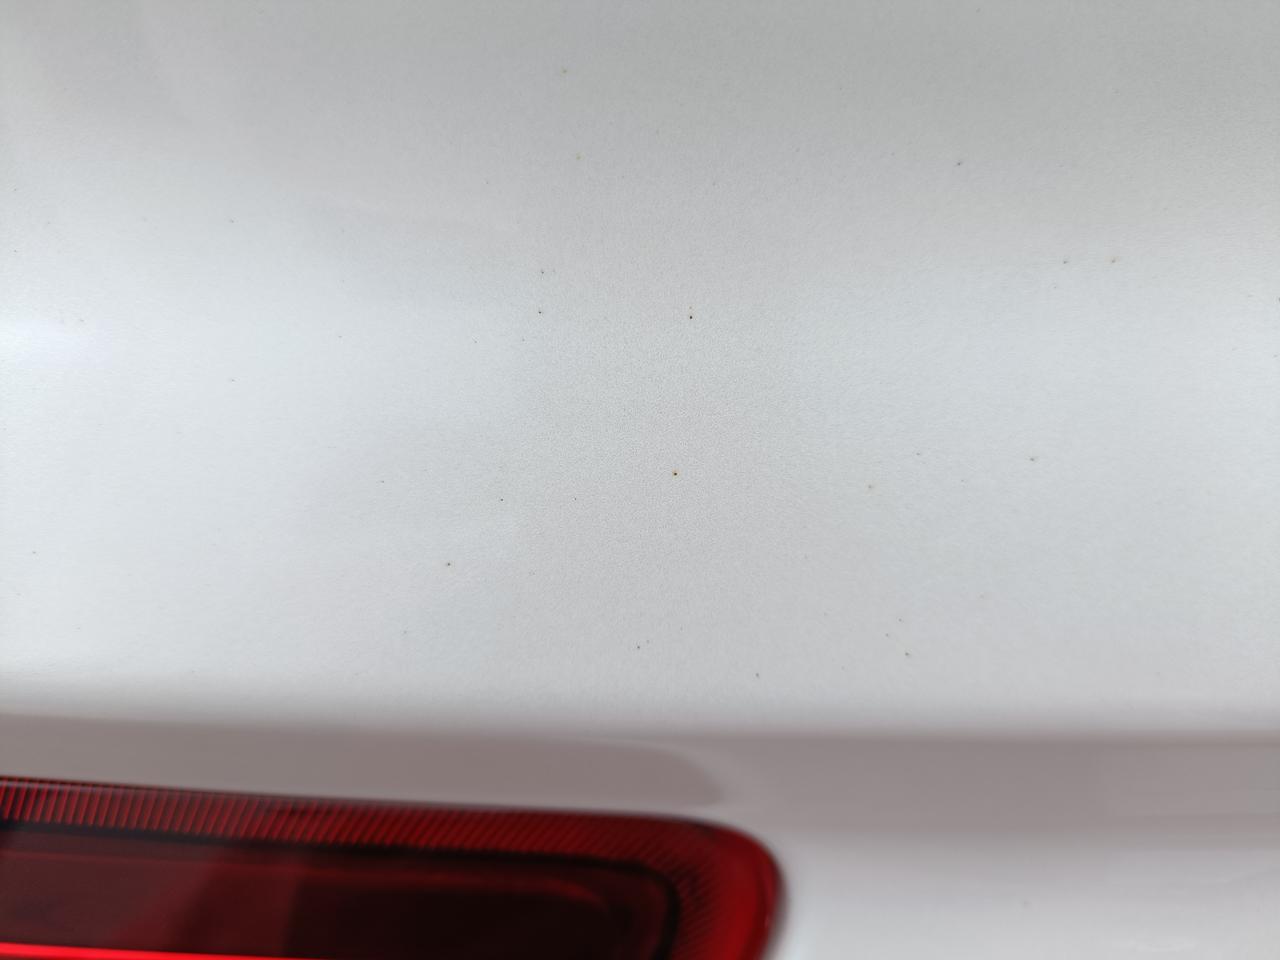 智跑7月生产的ACE.为啥有针尖大小的小锈点，百度一下说是漆面铁粉。咋形成的啊？属于车漆质量问题？